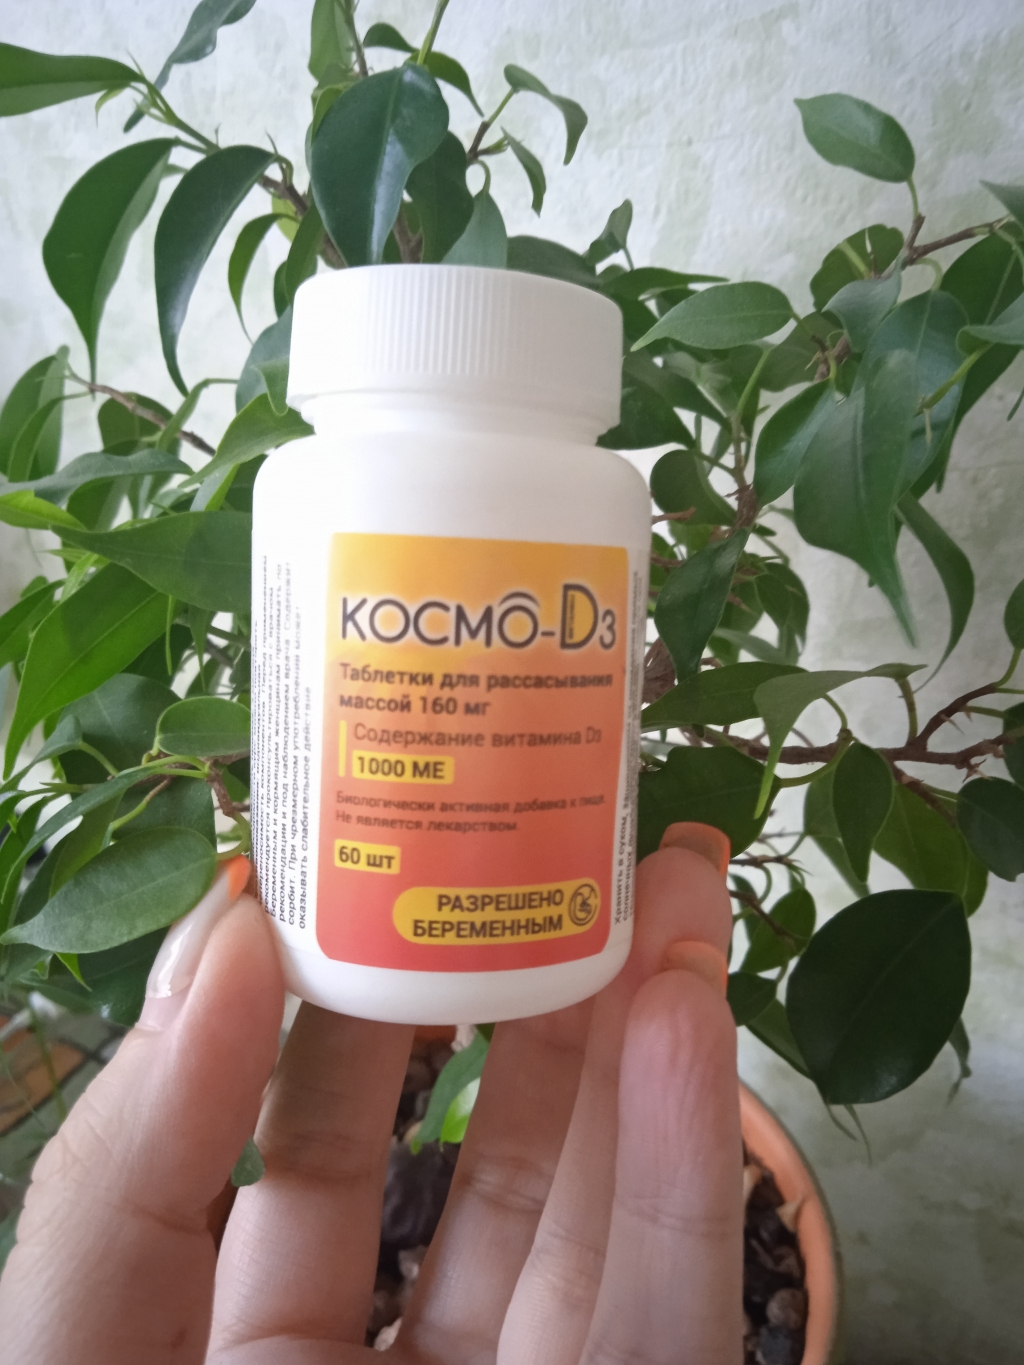 Космо D3 - Космо D3 - помощь организму в нехватке витамина